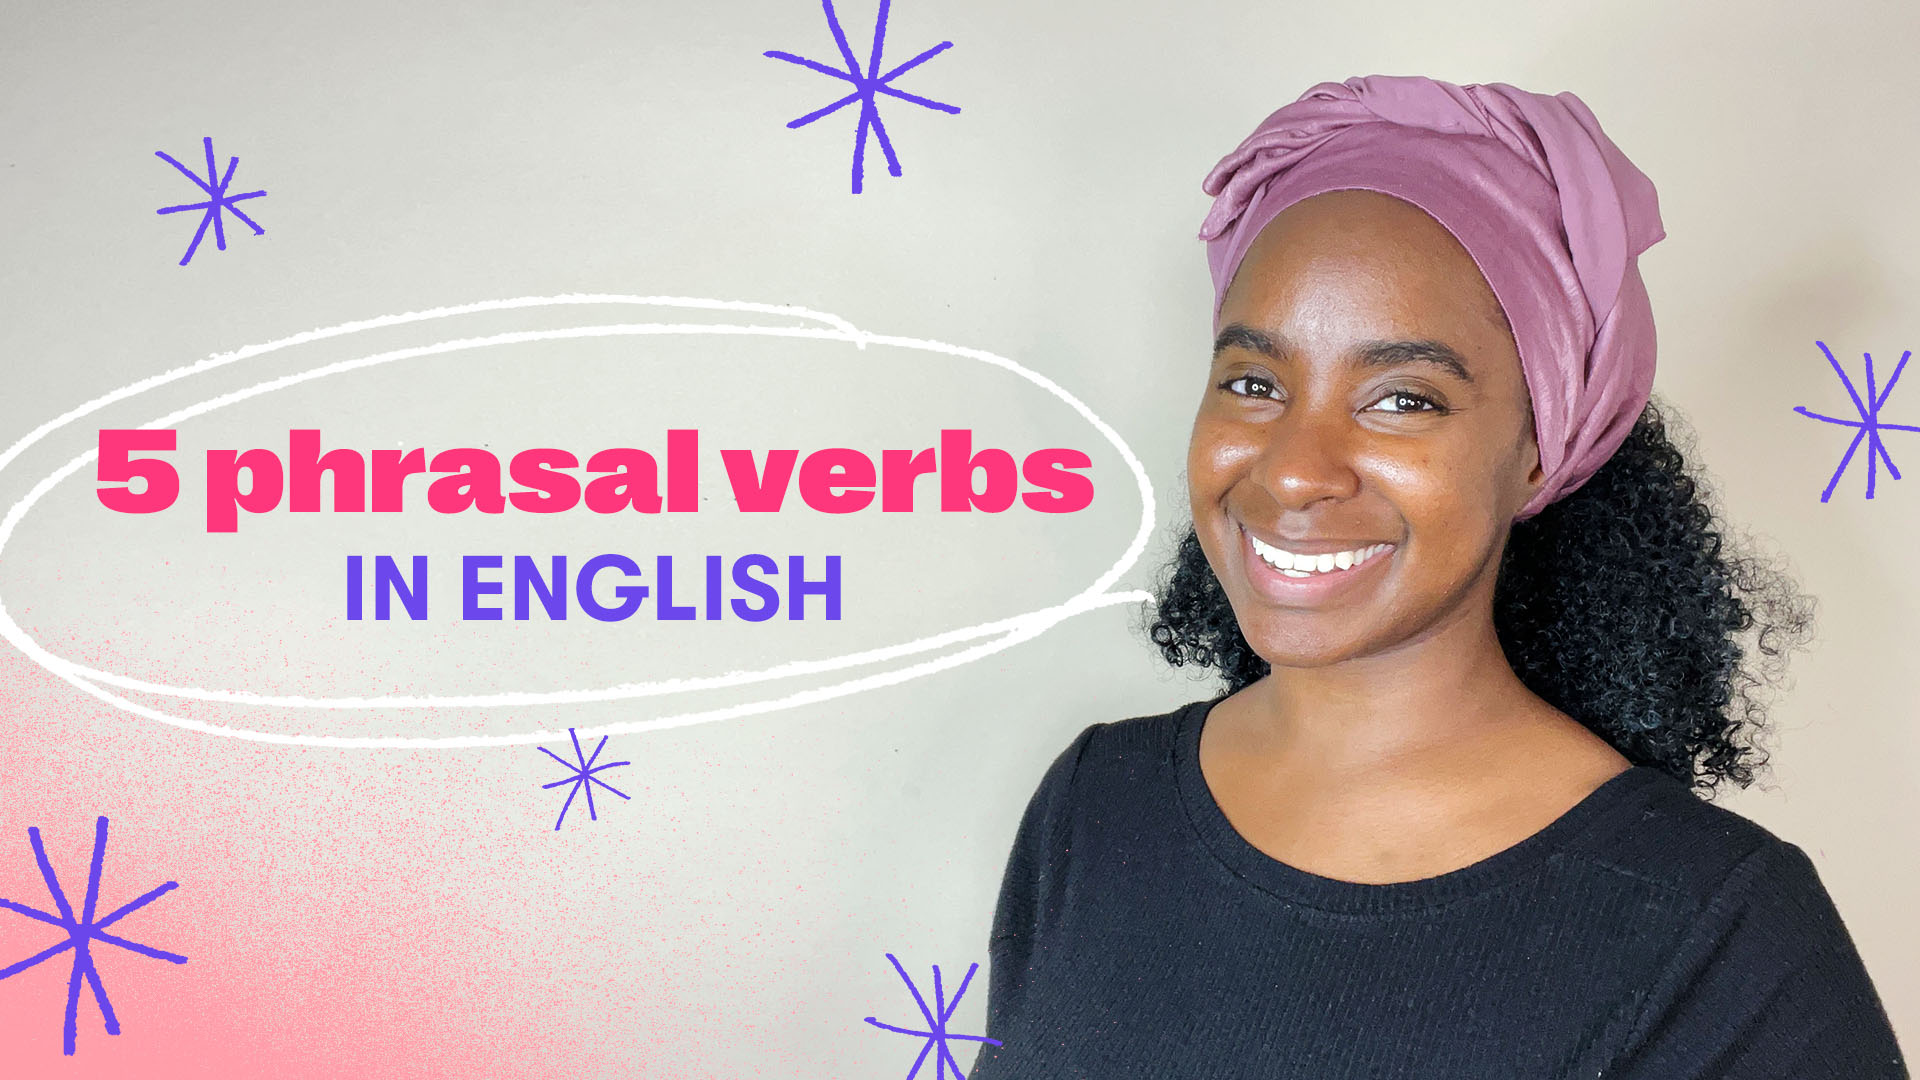 5 useful phrasal verbs in English